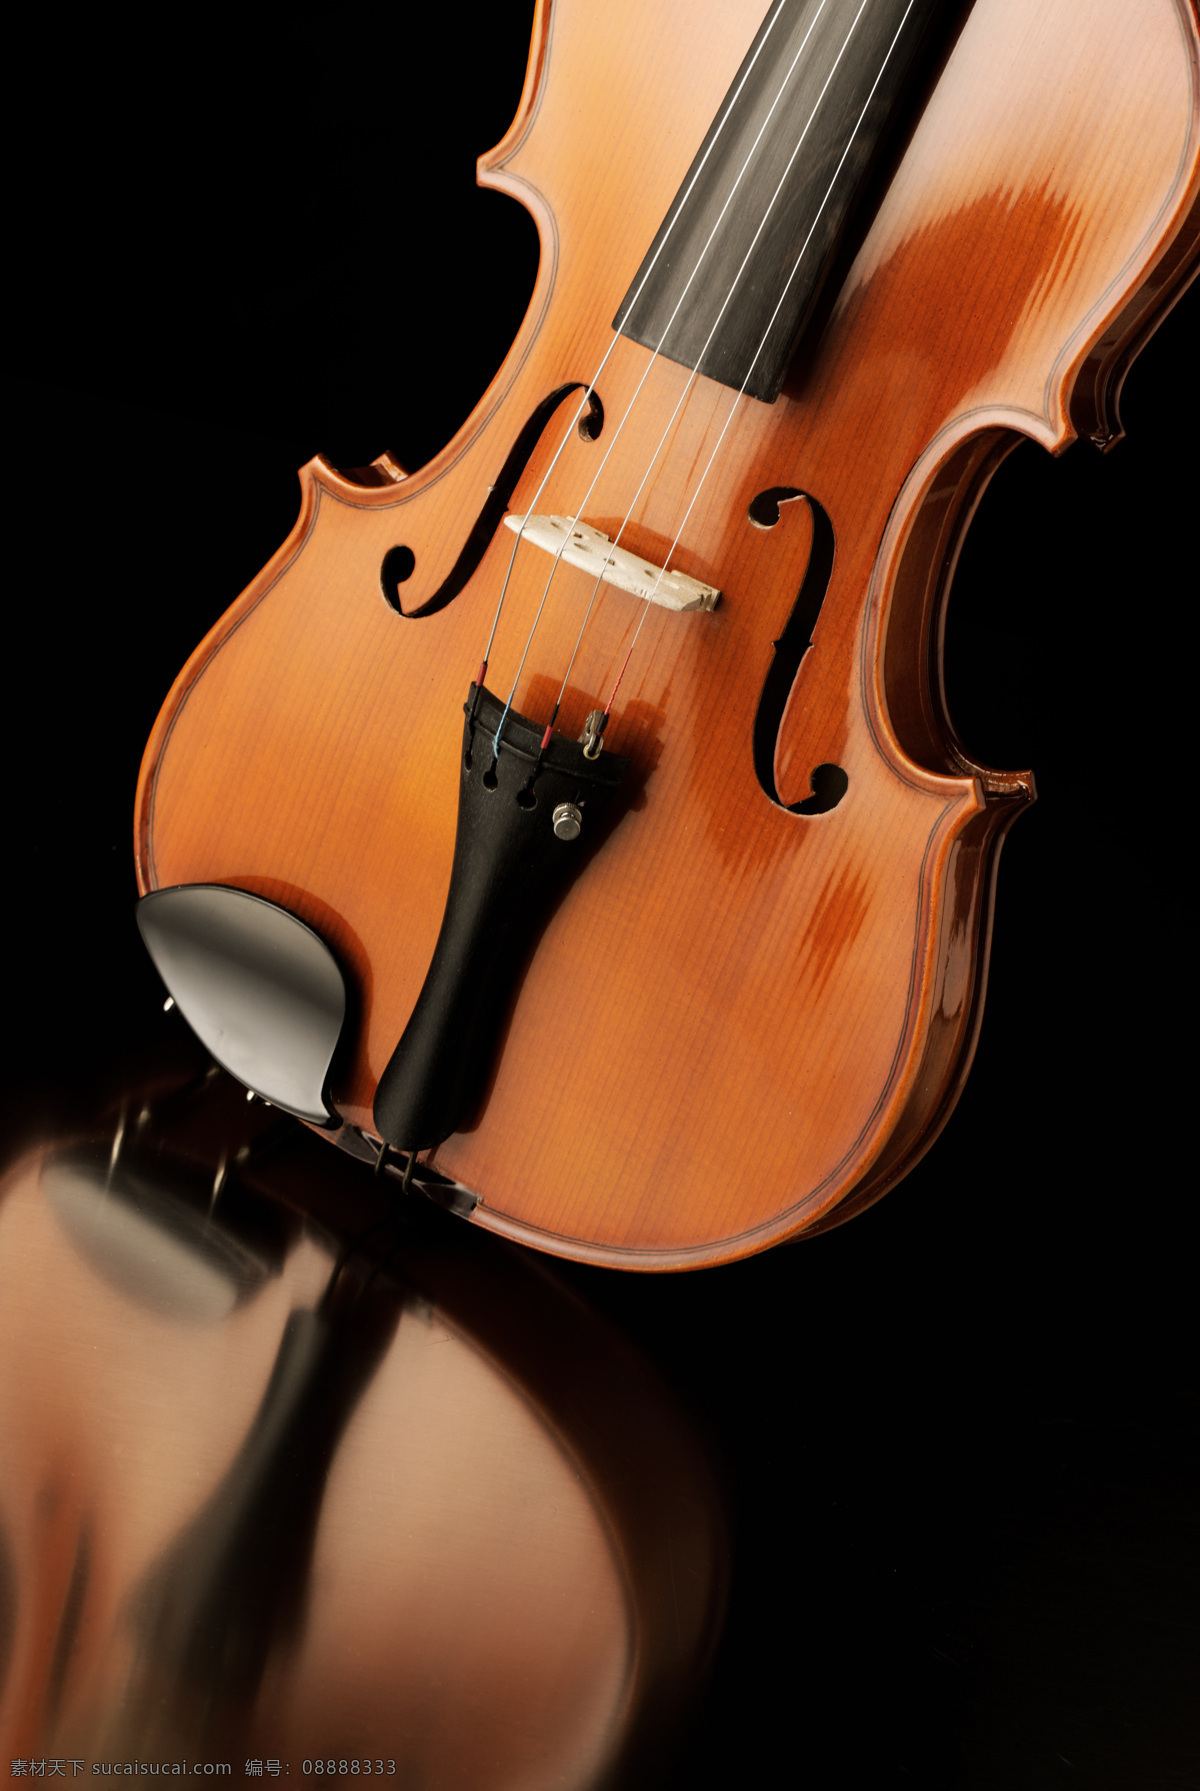 小提琴 古典乐器 乐器 文化艺术 舞蹈音乐 音乐 西洋乐器 psd源文件